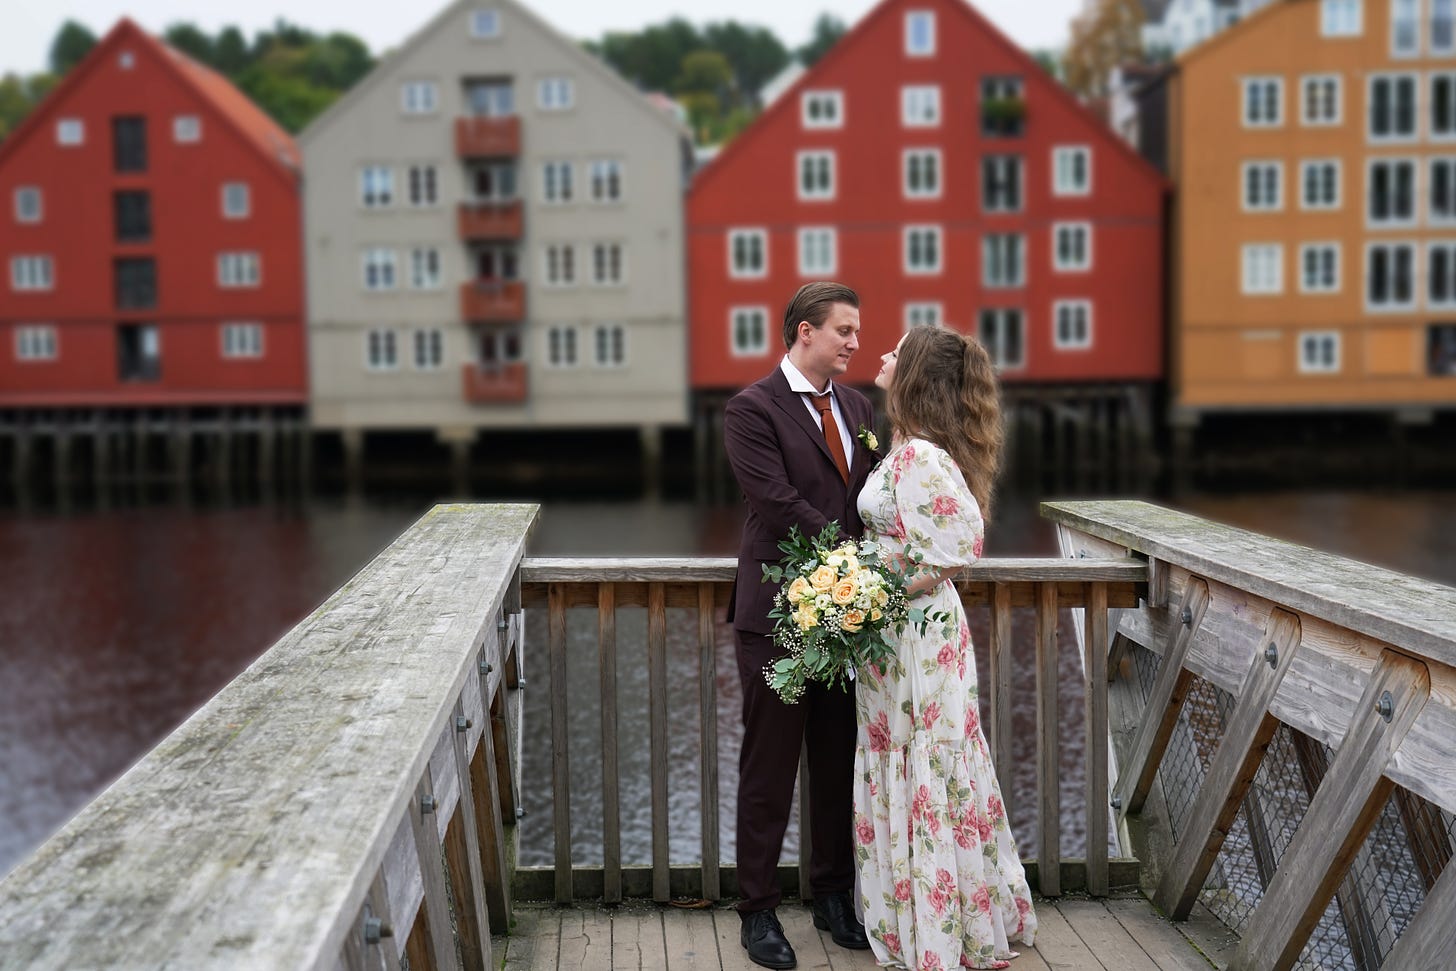 PeterSweden married Trondheim